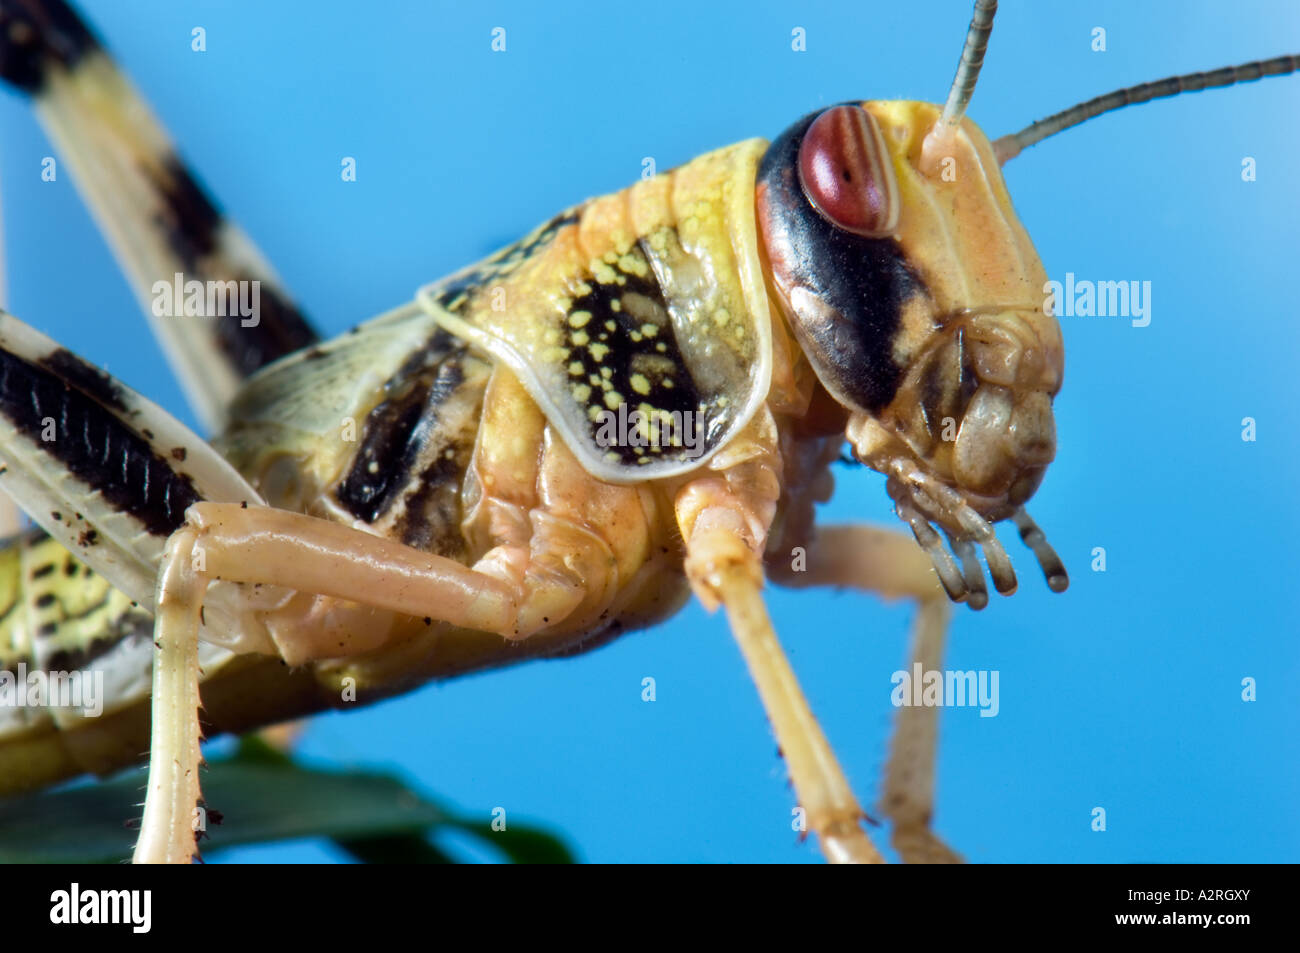 Heuschrecke Heuschrecke Trichter von Brachland Wildnis Wüstenlandschaft Feldheuschrecken blauen einfarbigen Hintergrund Stockfoto